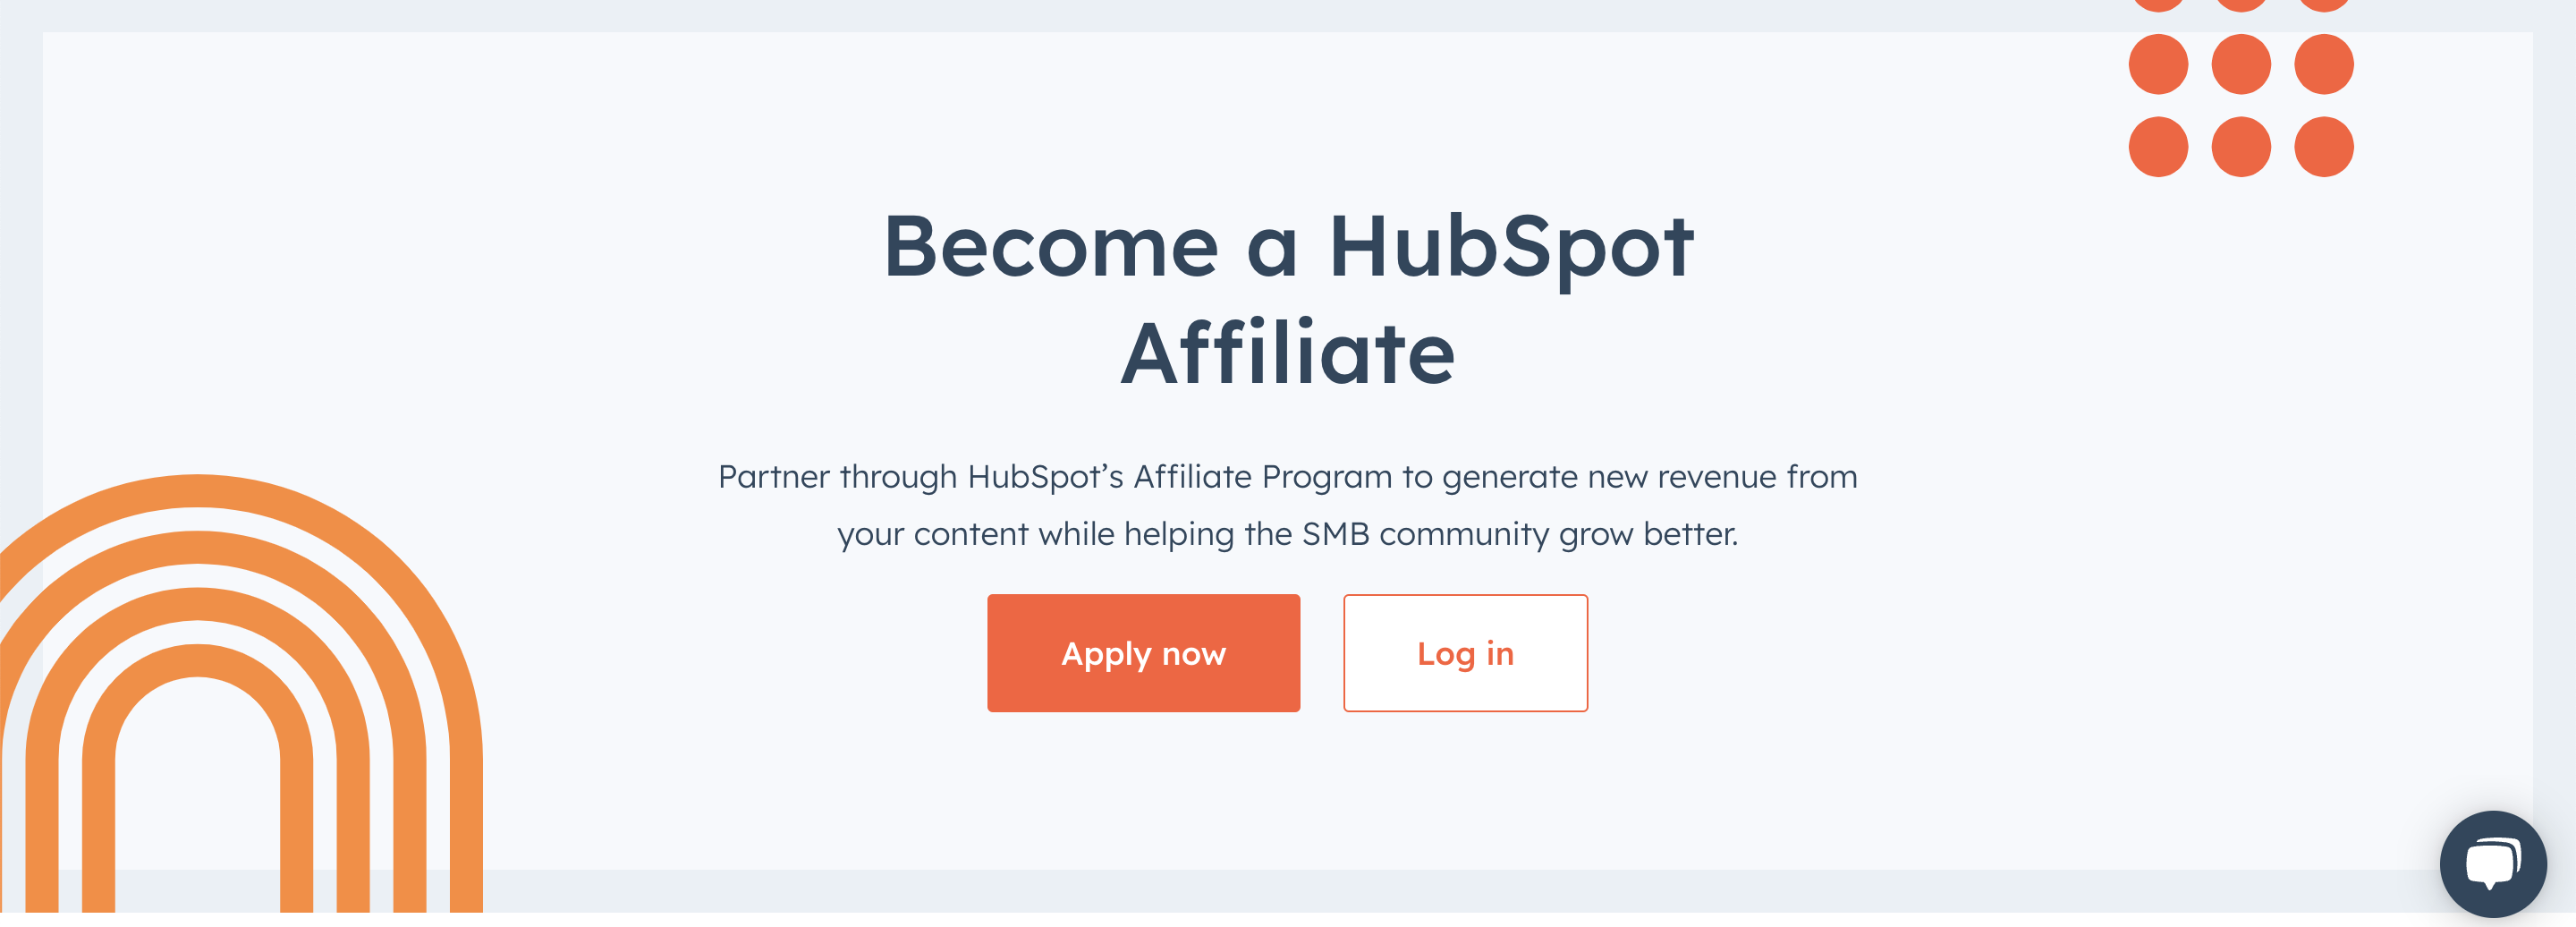 허브스팟 affiliate 프로그램